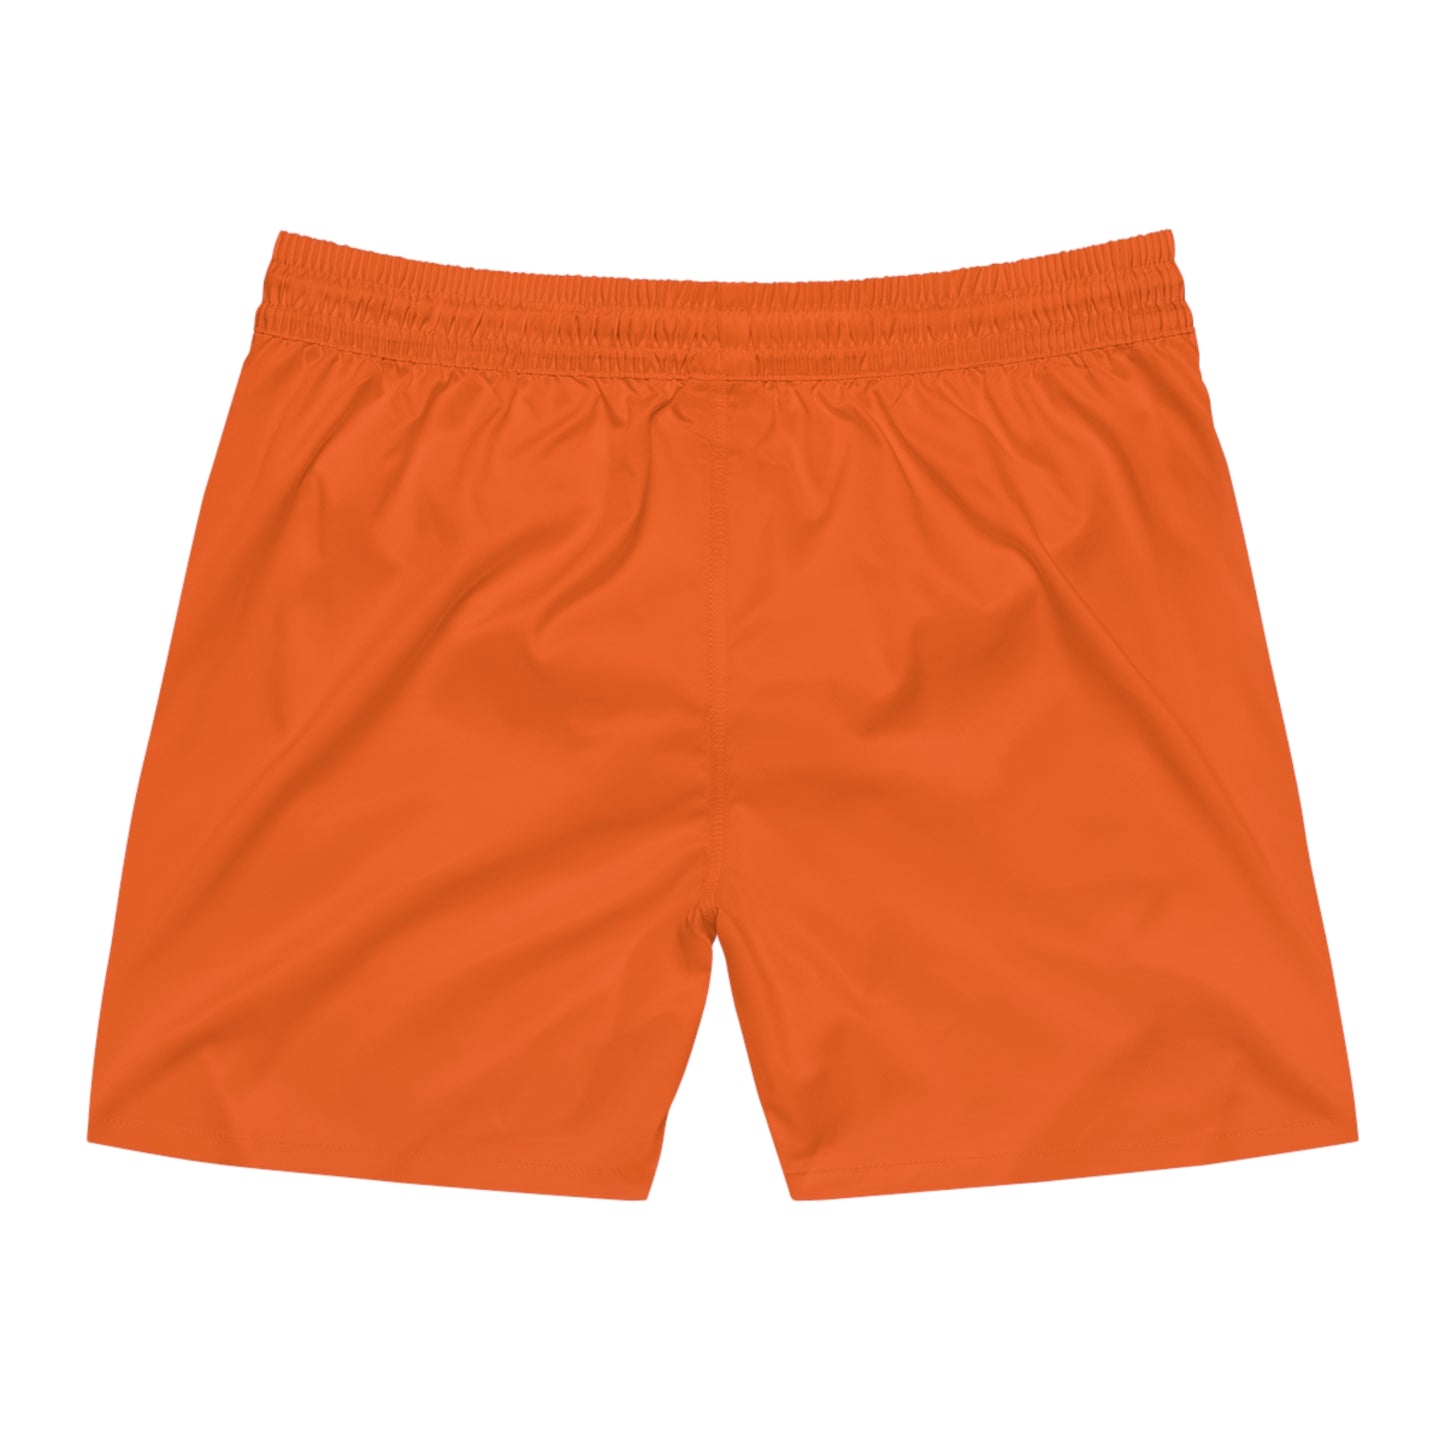 Illinois Shorts